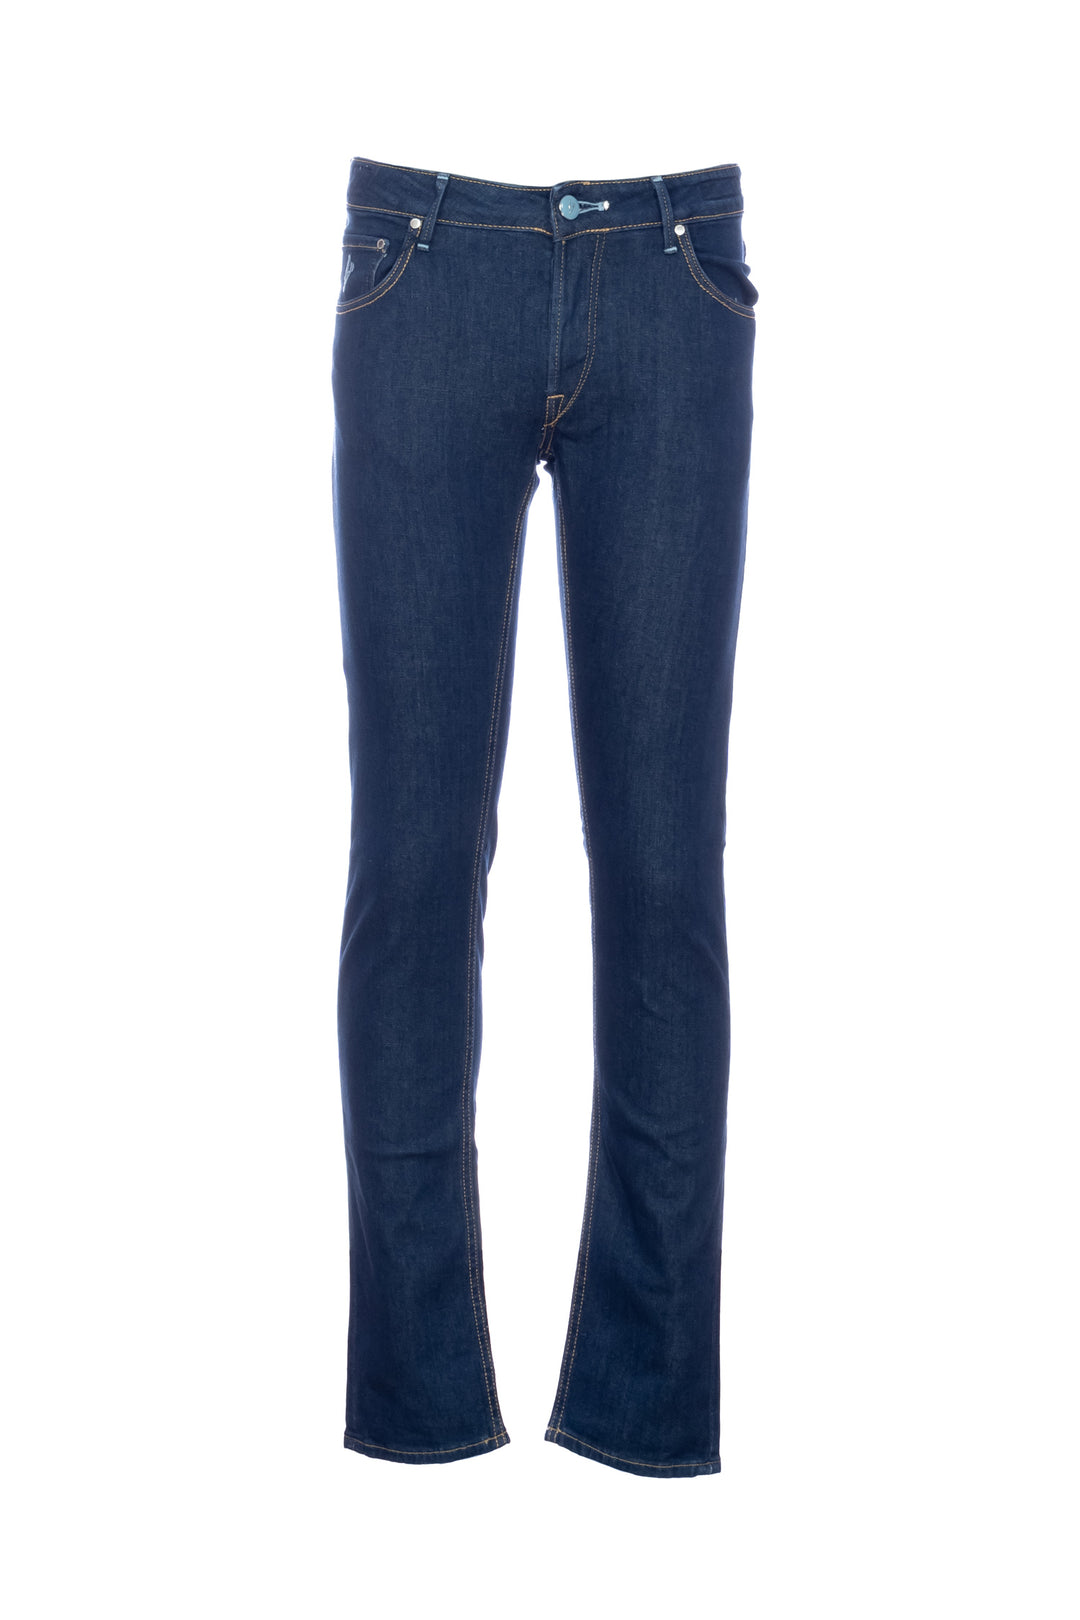 HANDPICKED Jeans 5 tasche “ORVIETO-C” in denim stretch lavaggio medio 11 - Mancinelli 1954